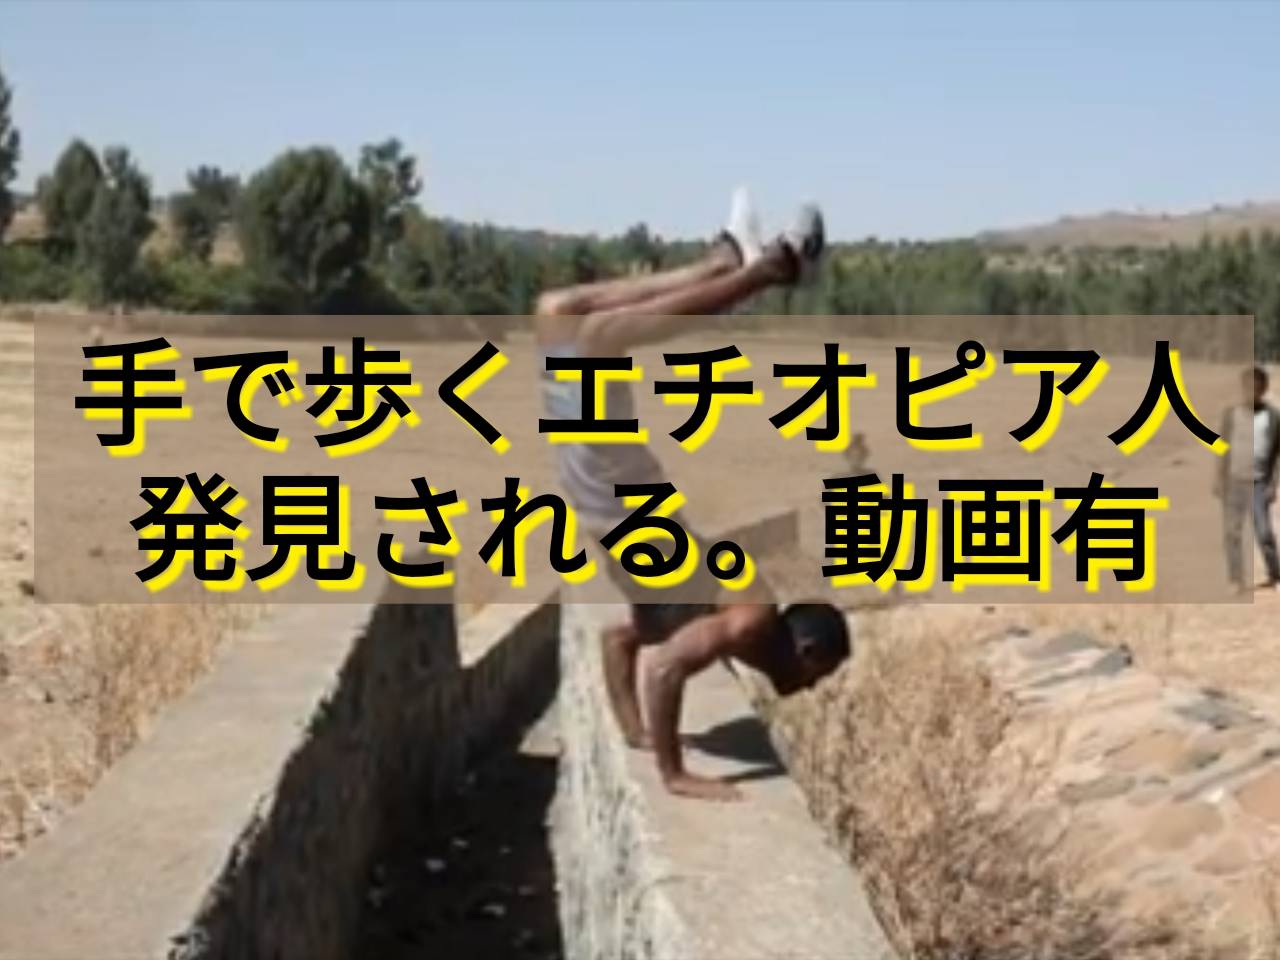 手で歩くエチオピア人が発見される。（動画あり）